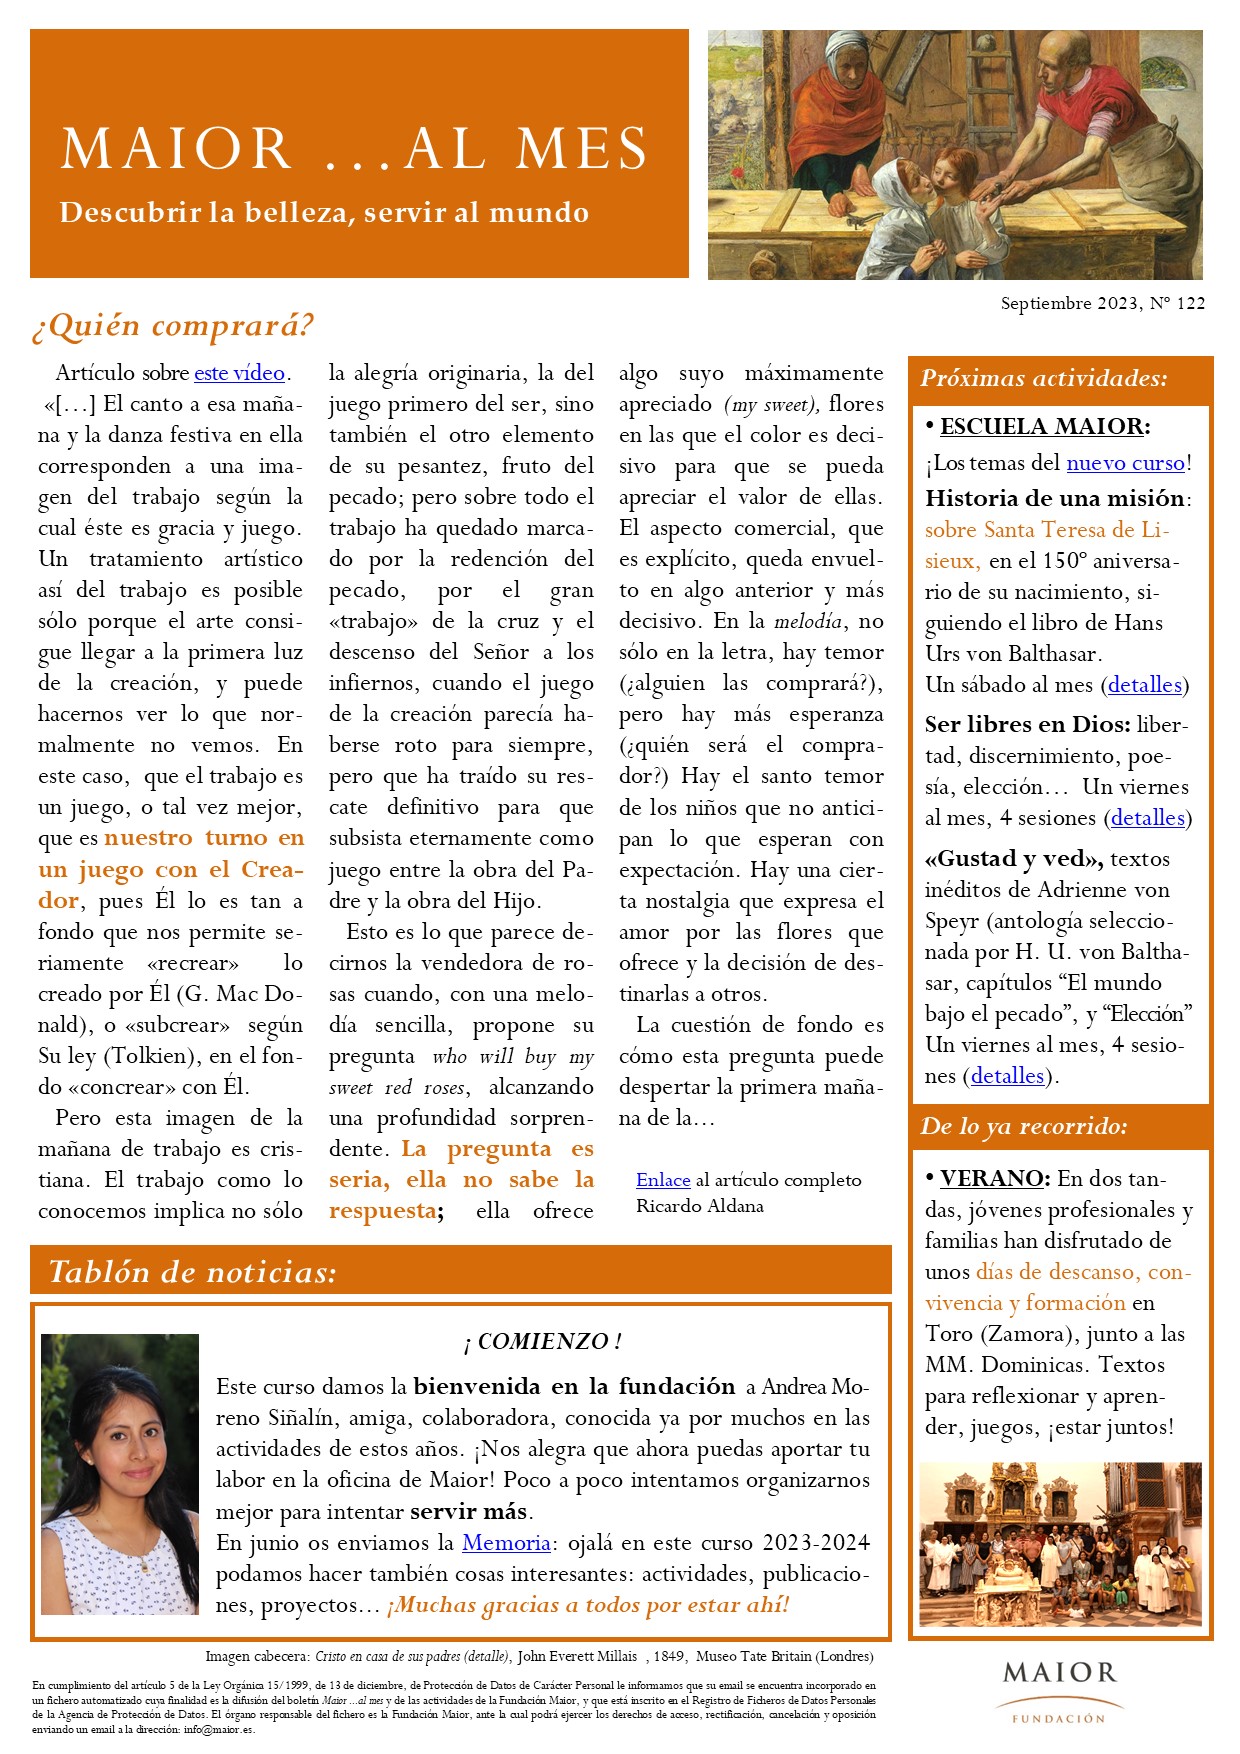 Boletín mensual de noticias y actividades de la Fundación Maior. Edición de septiembre 2023